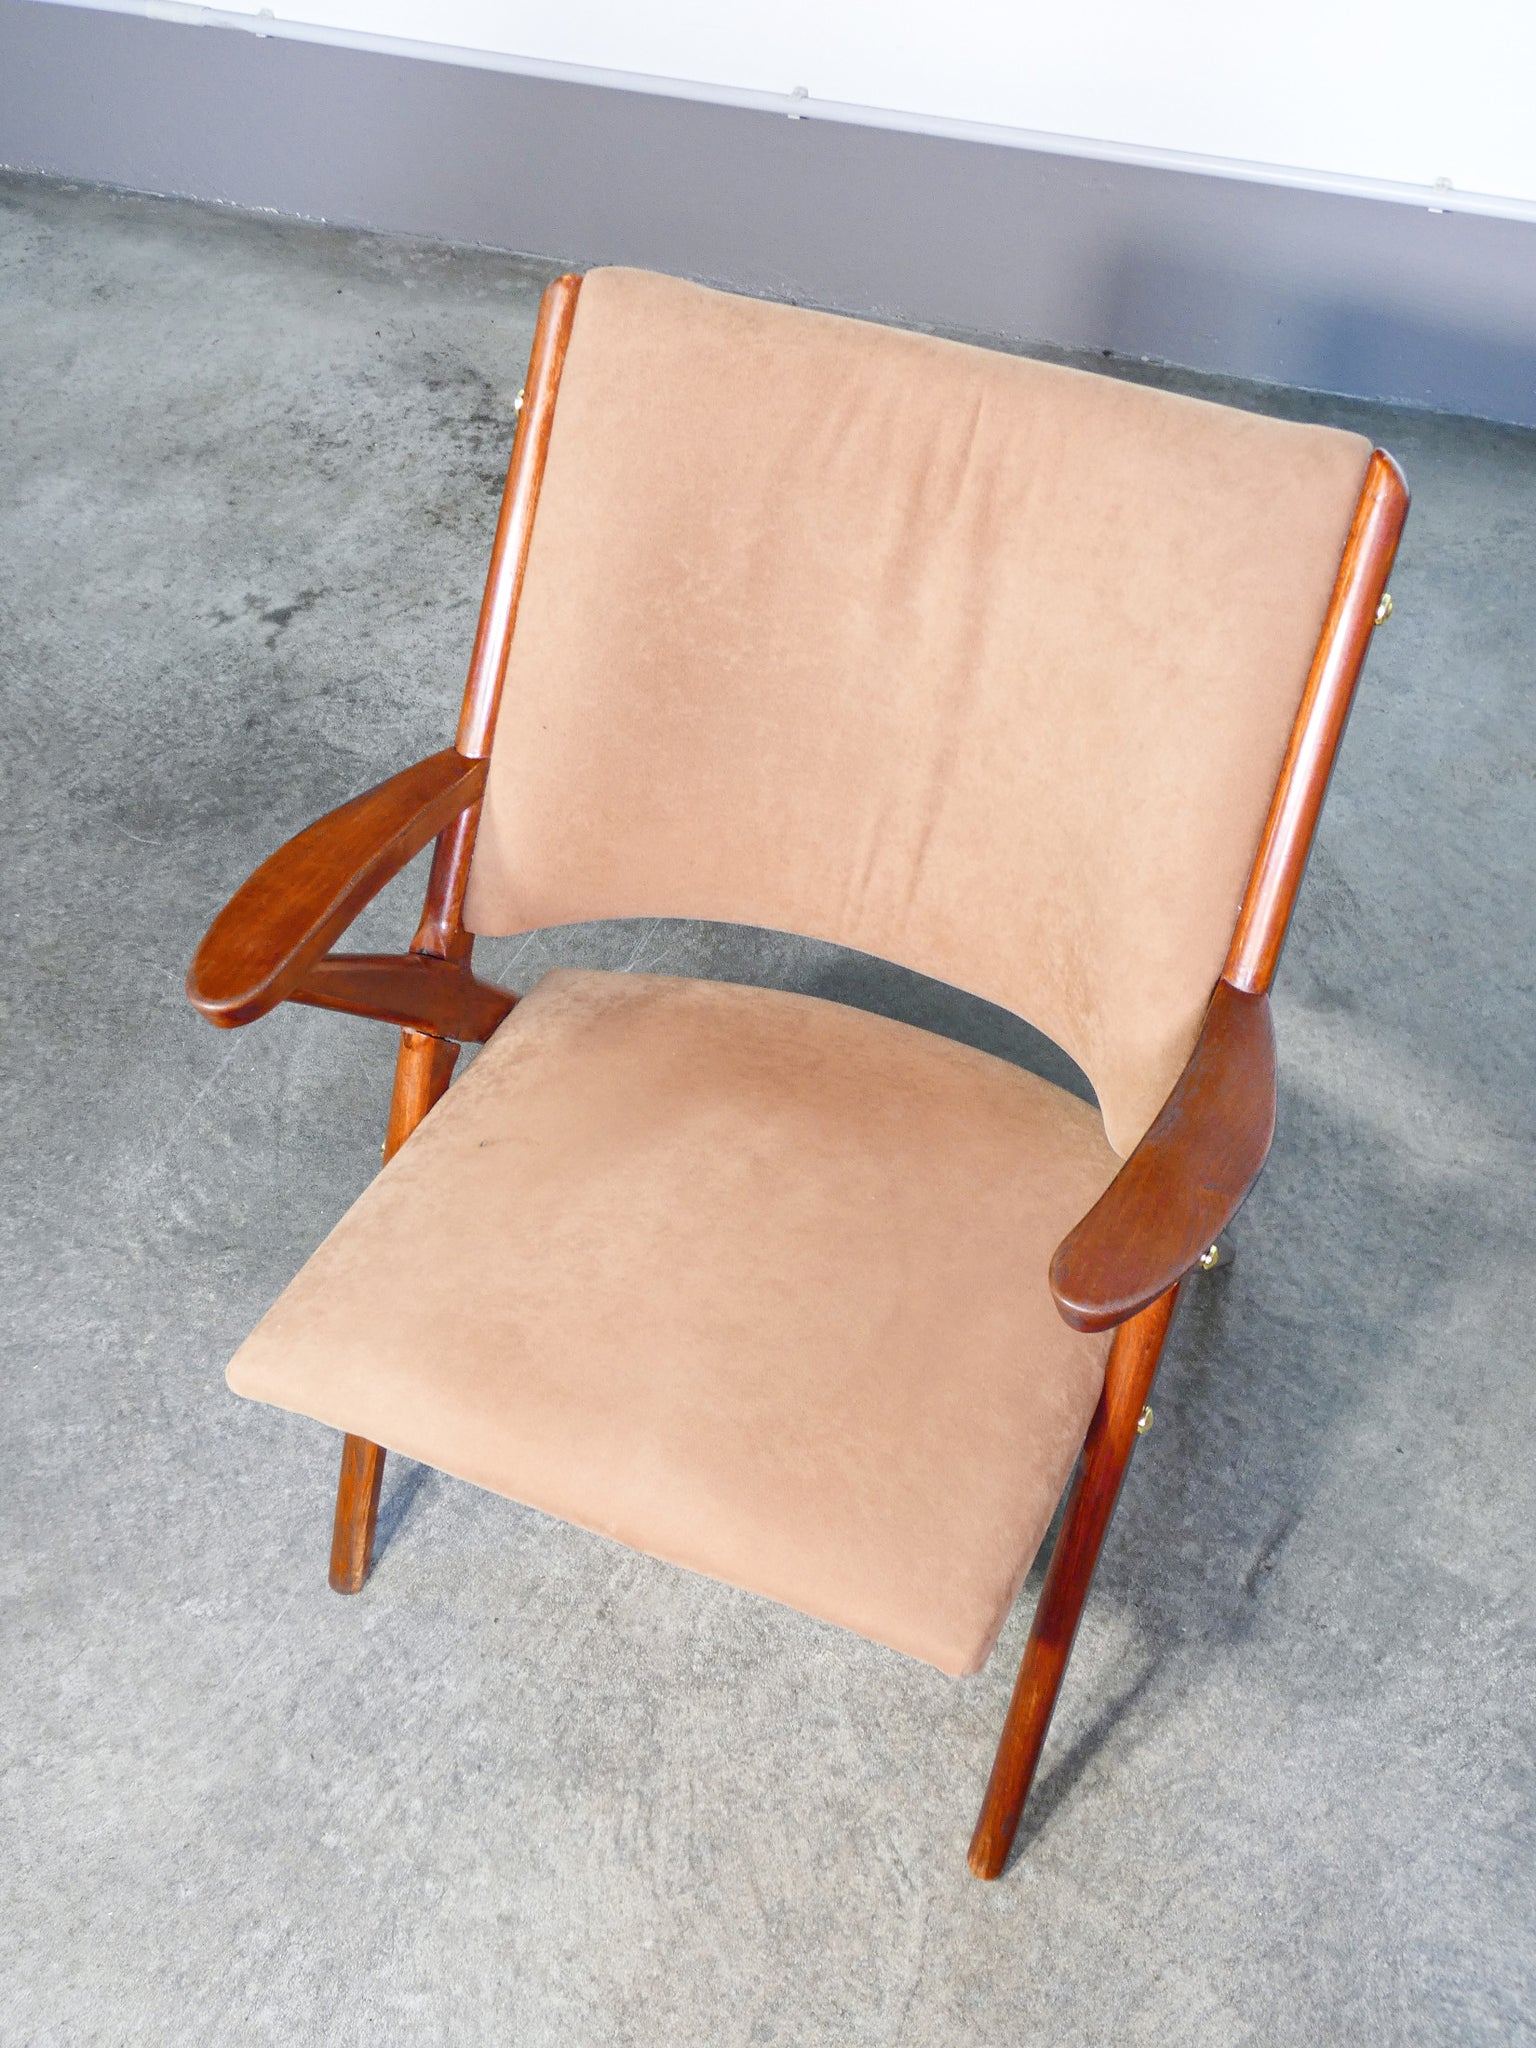 coppia poltrone design italia 1940s legno faggio sedie vintage armchairs